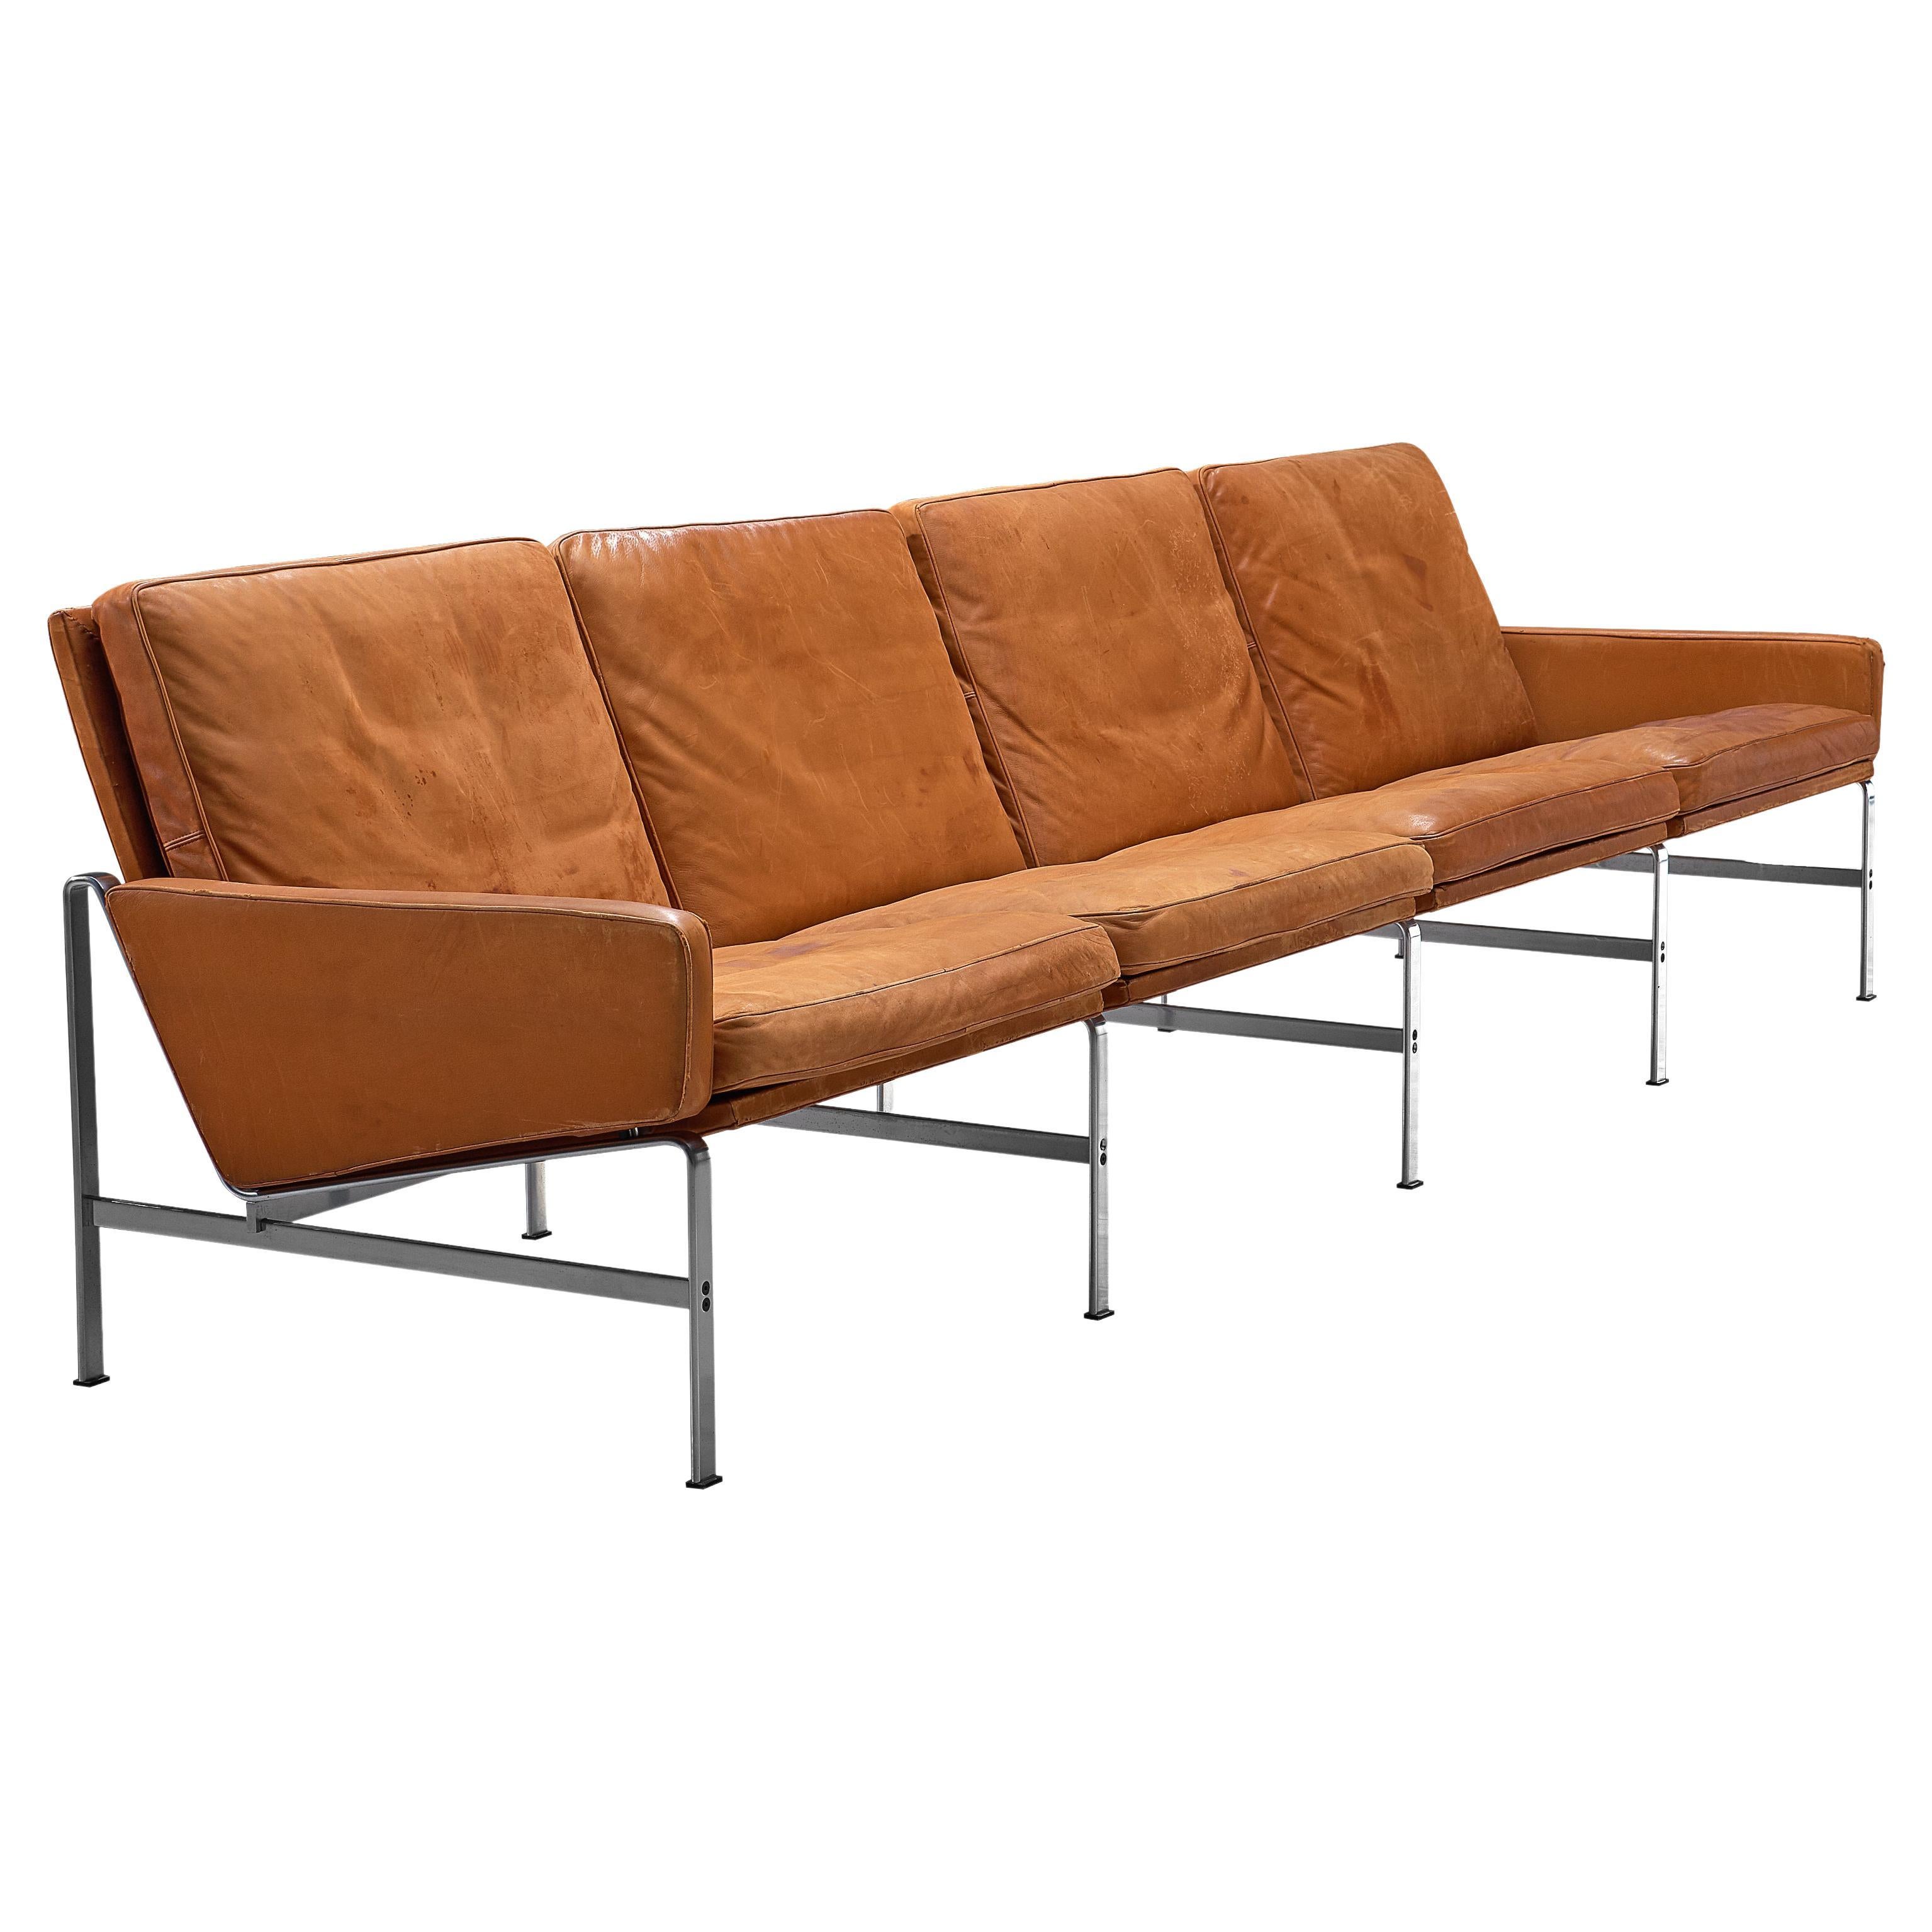 Jørgen Kastholm & Preben Fabricius Cognac Leather Sofa with Steel Frame